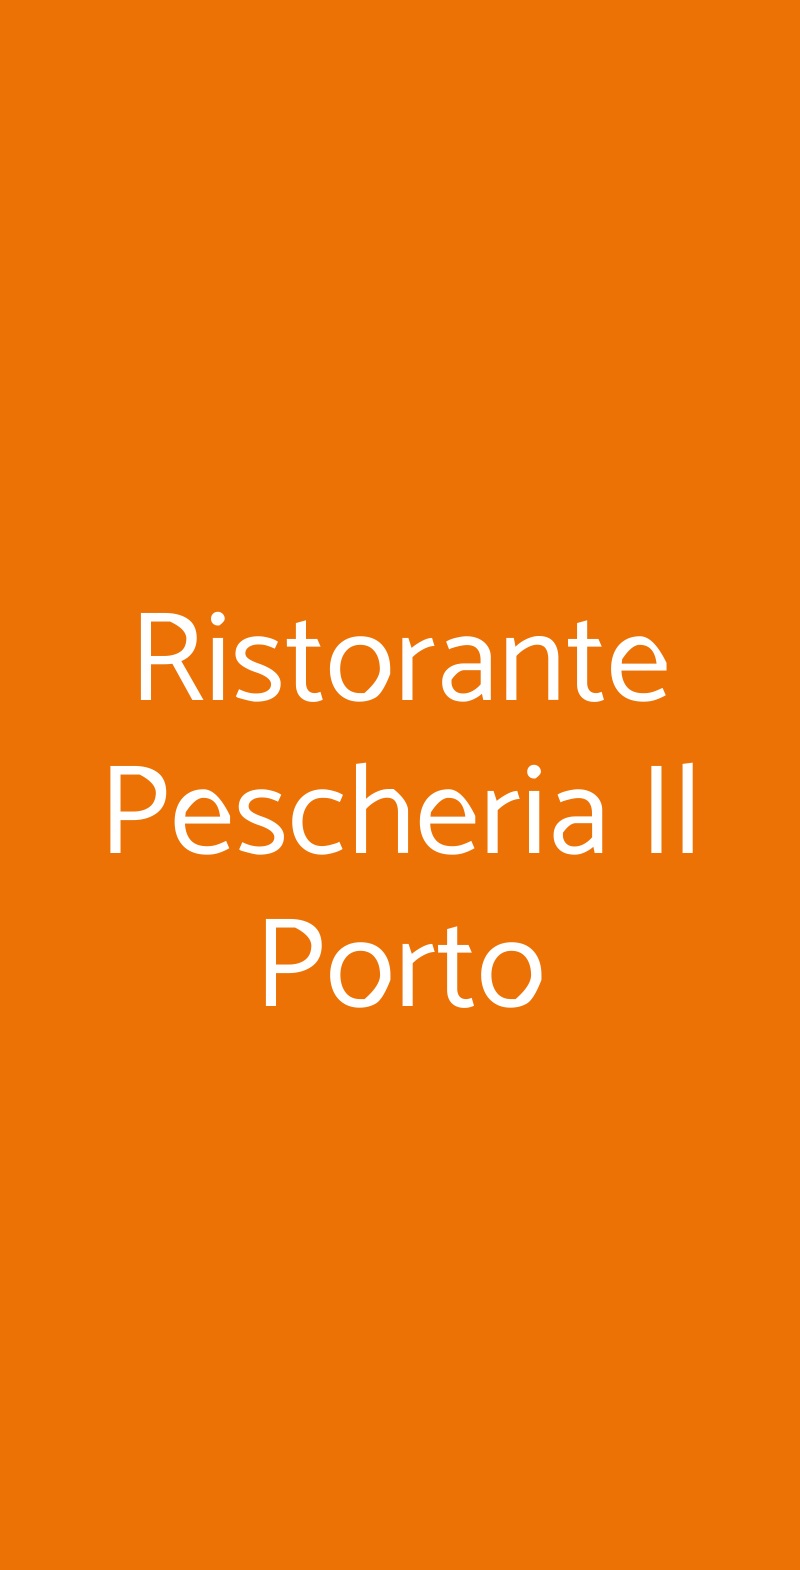 Ristorante Pescheria Il Porto Livorno menù 1 pagina